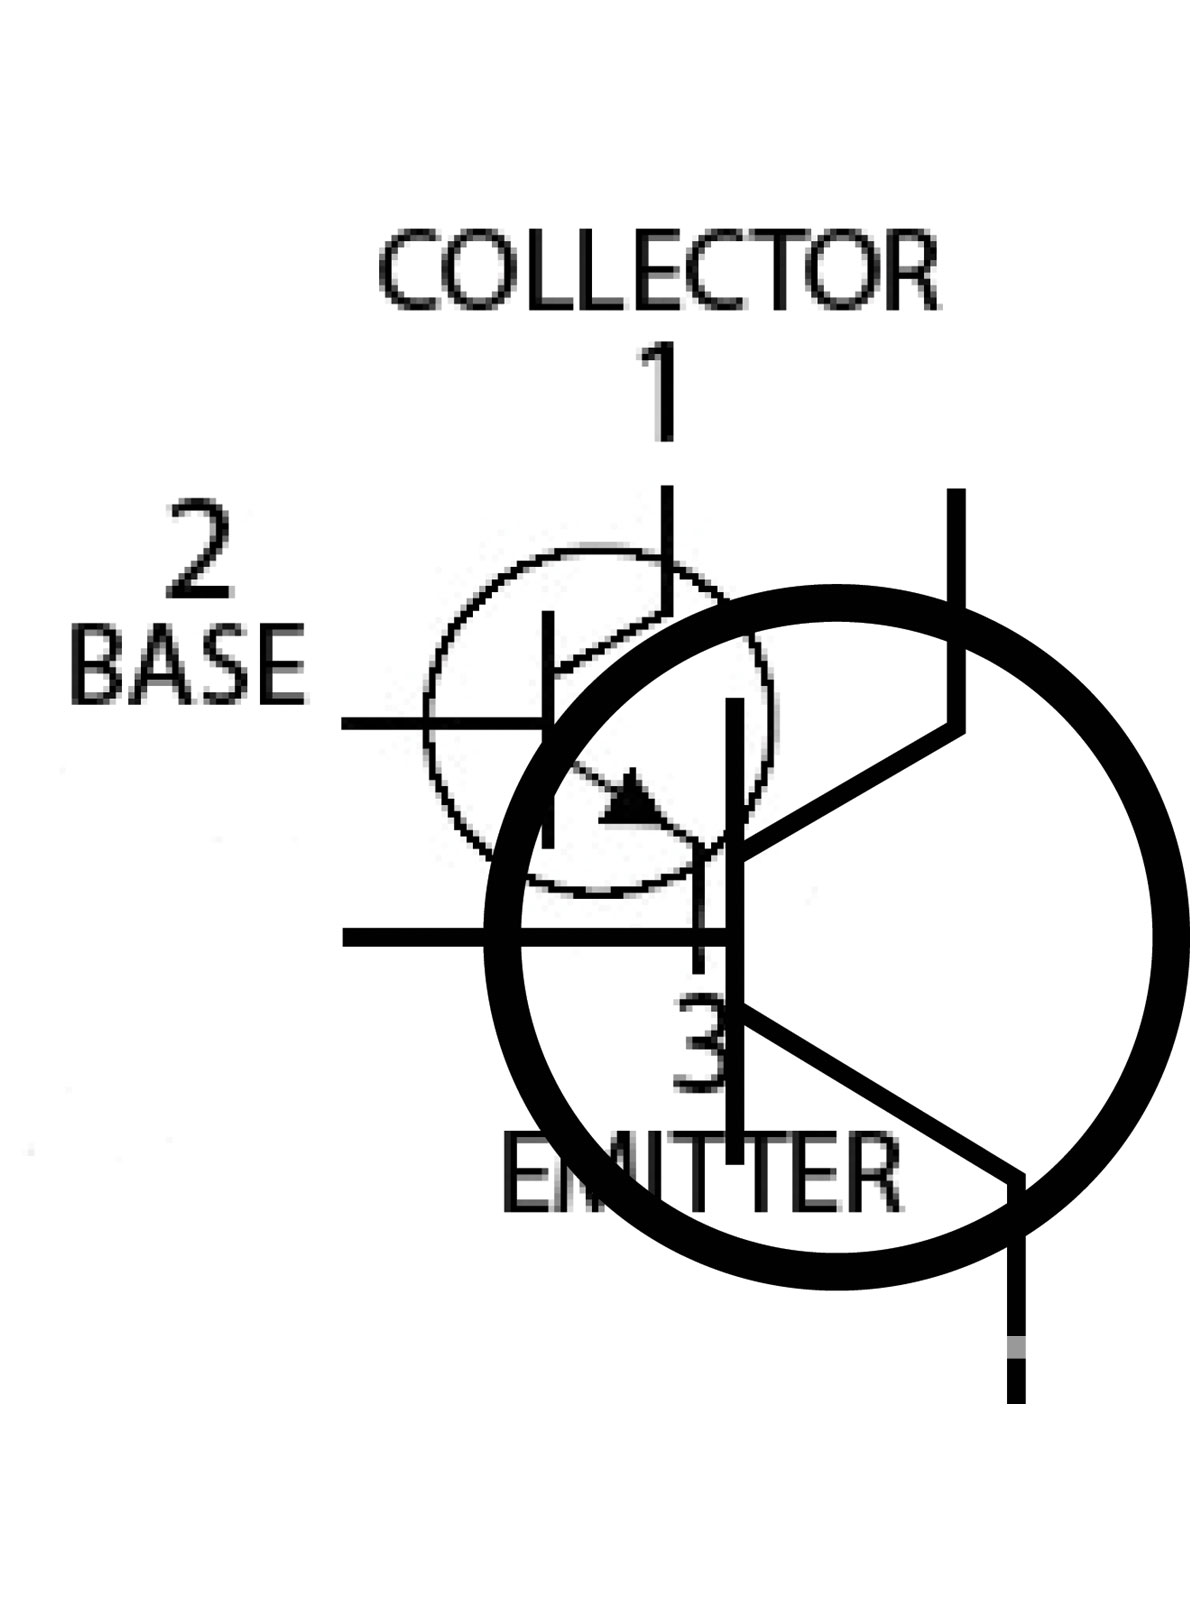 transistor symbol